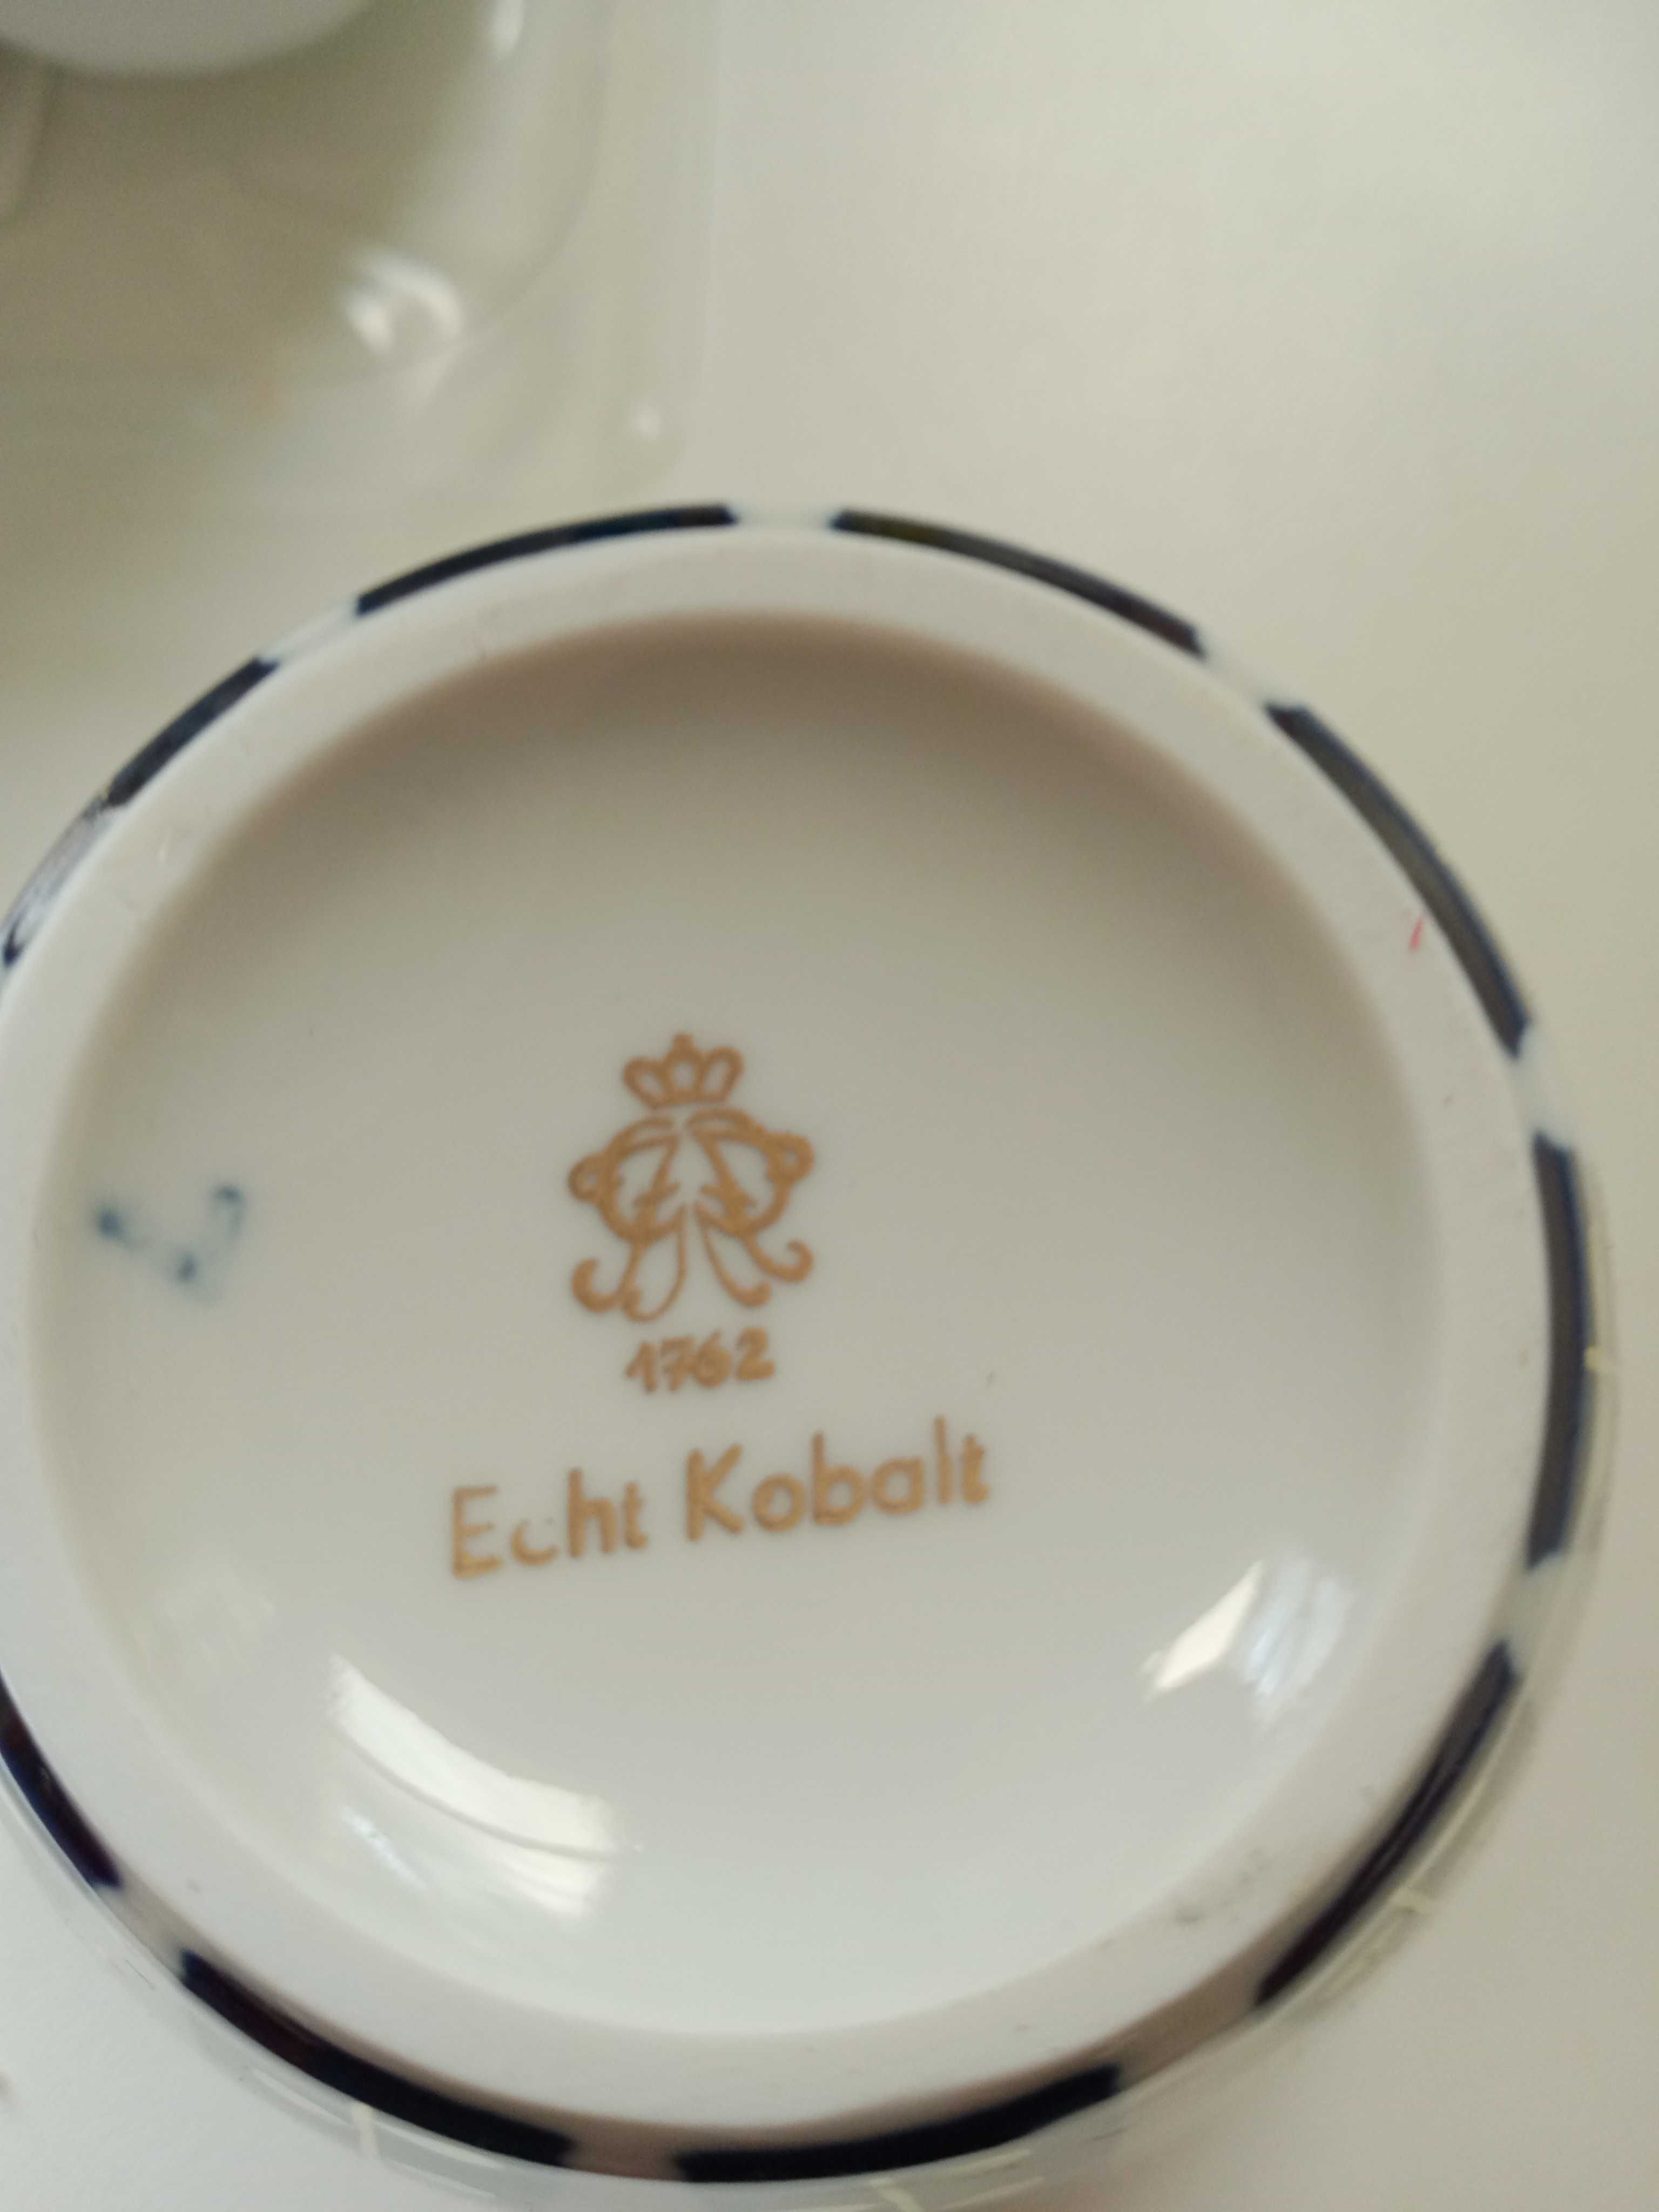 Unikat! Maleńki wazonik porcelanowy Echt Kobalt